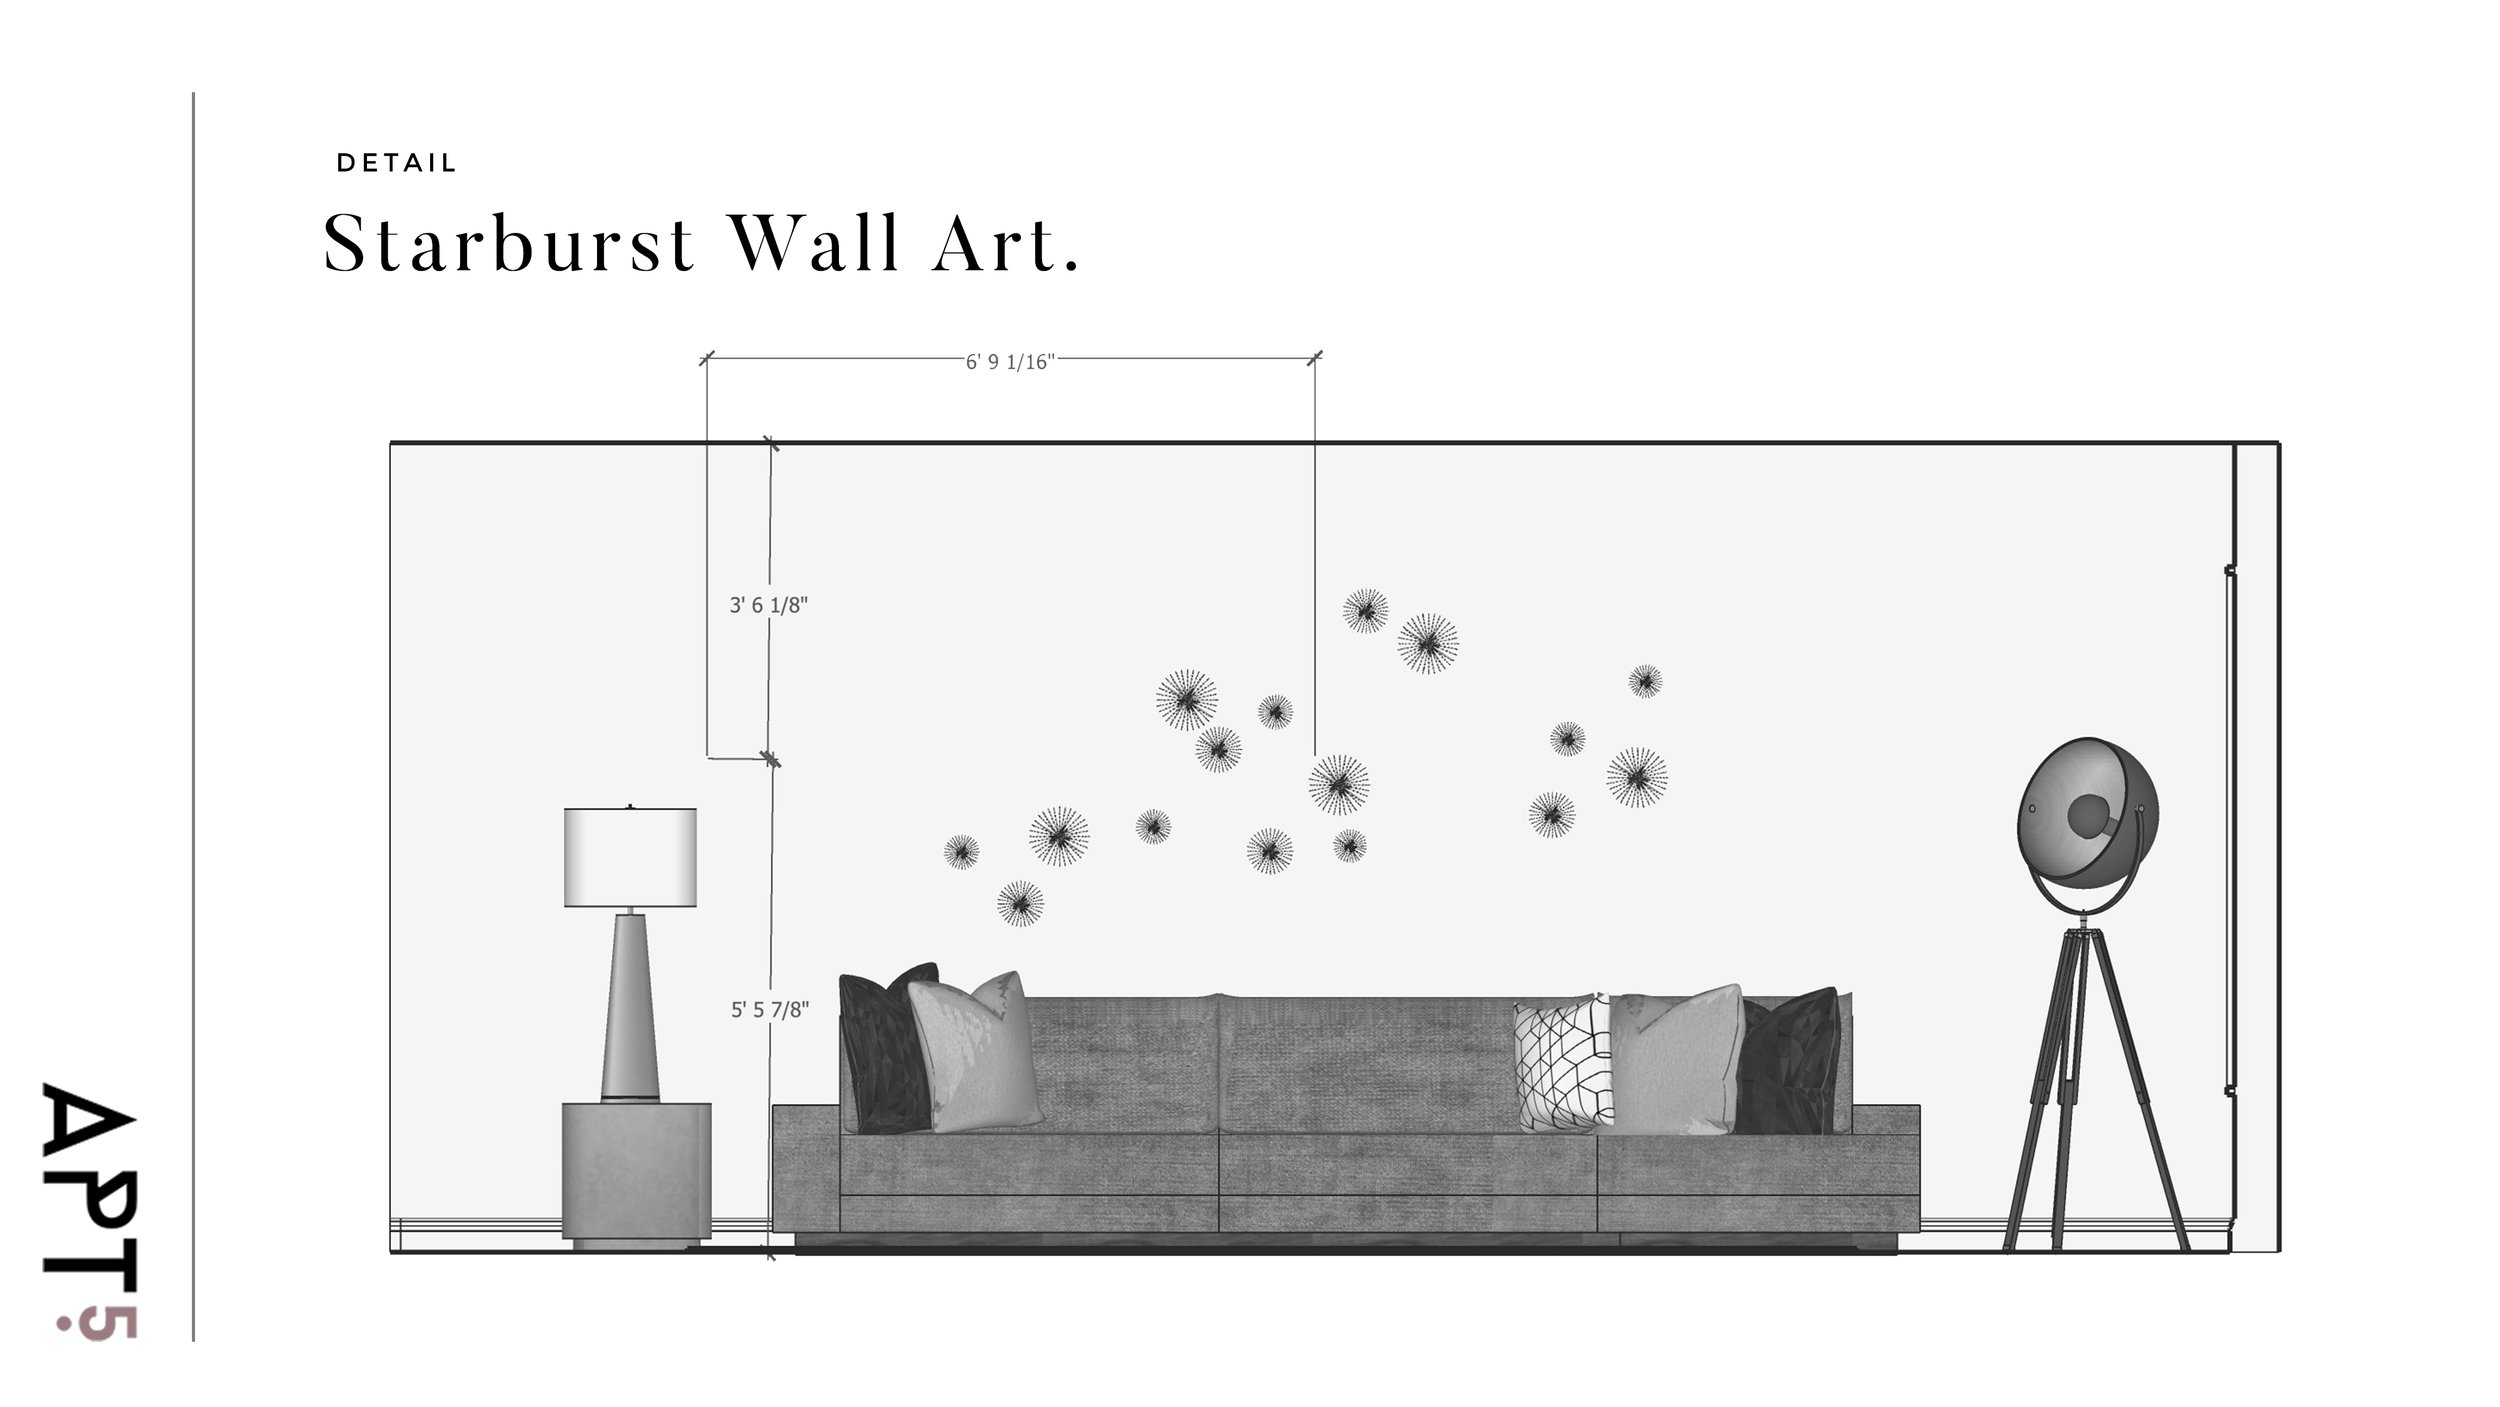 Starburst Wall Detal.jpg